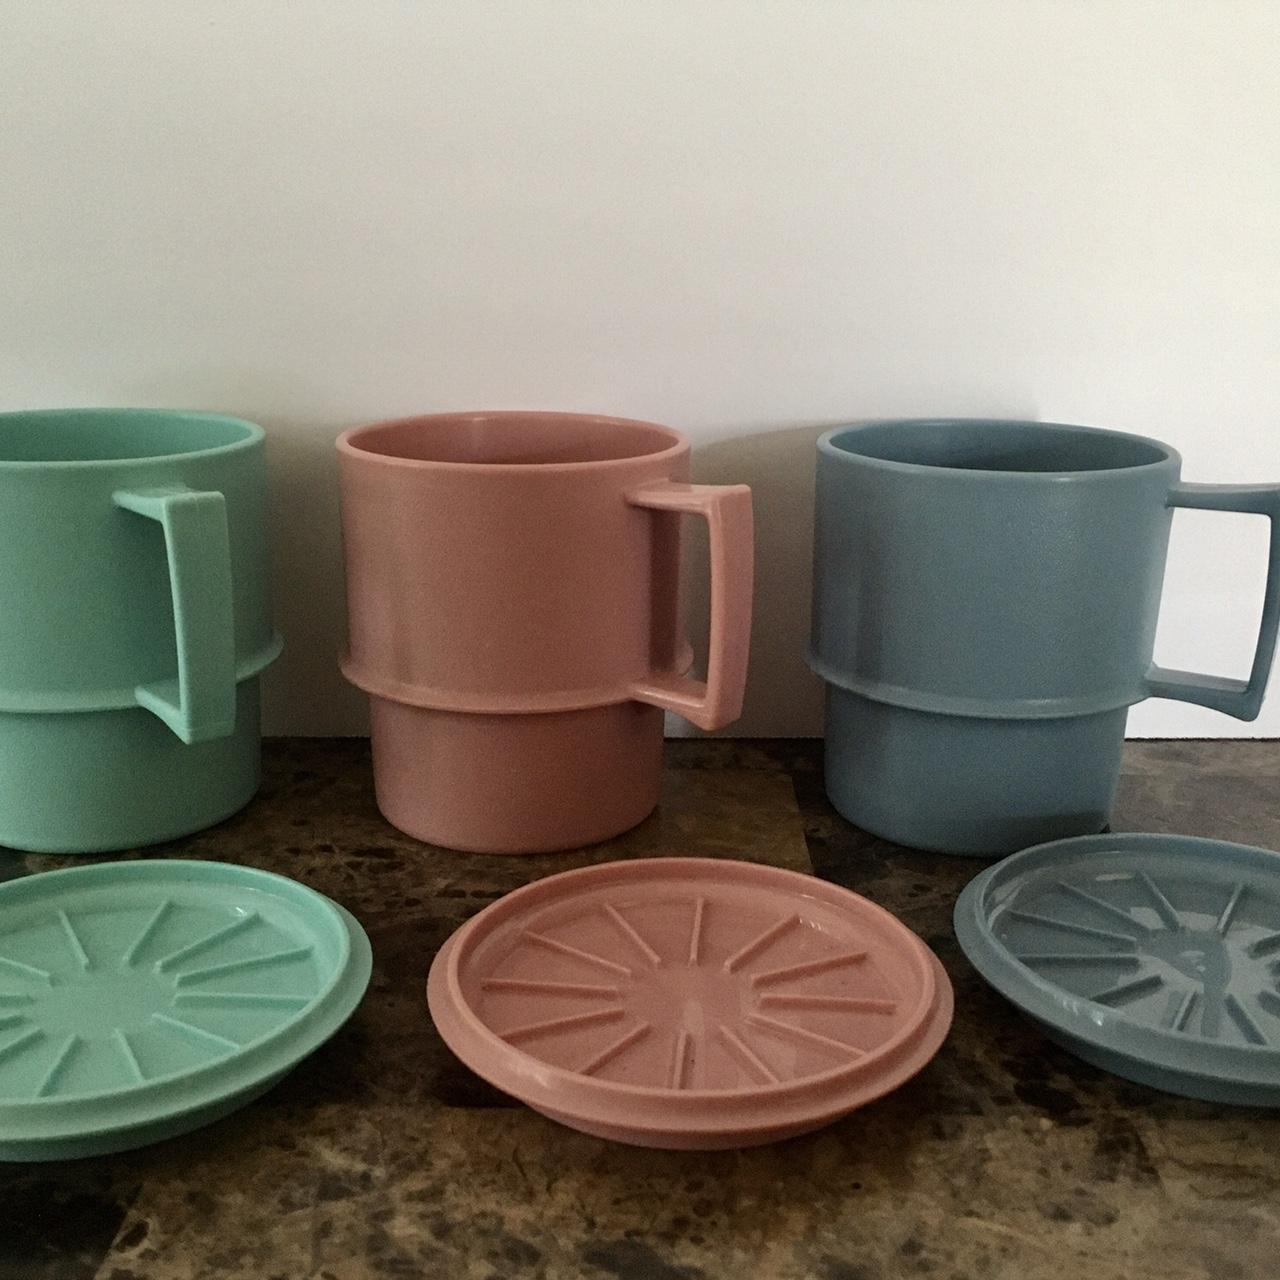 Vintage Tupperware Coffee Cups with Lids/Coasters. - Depop